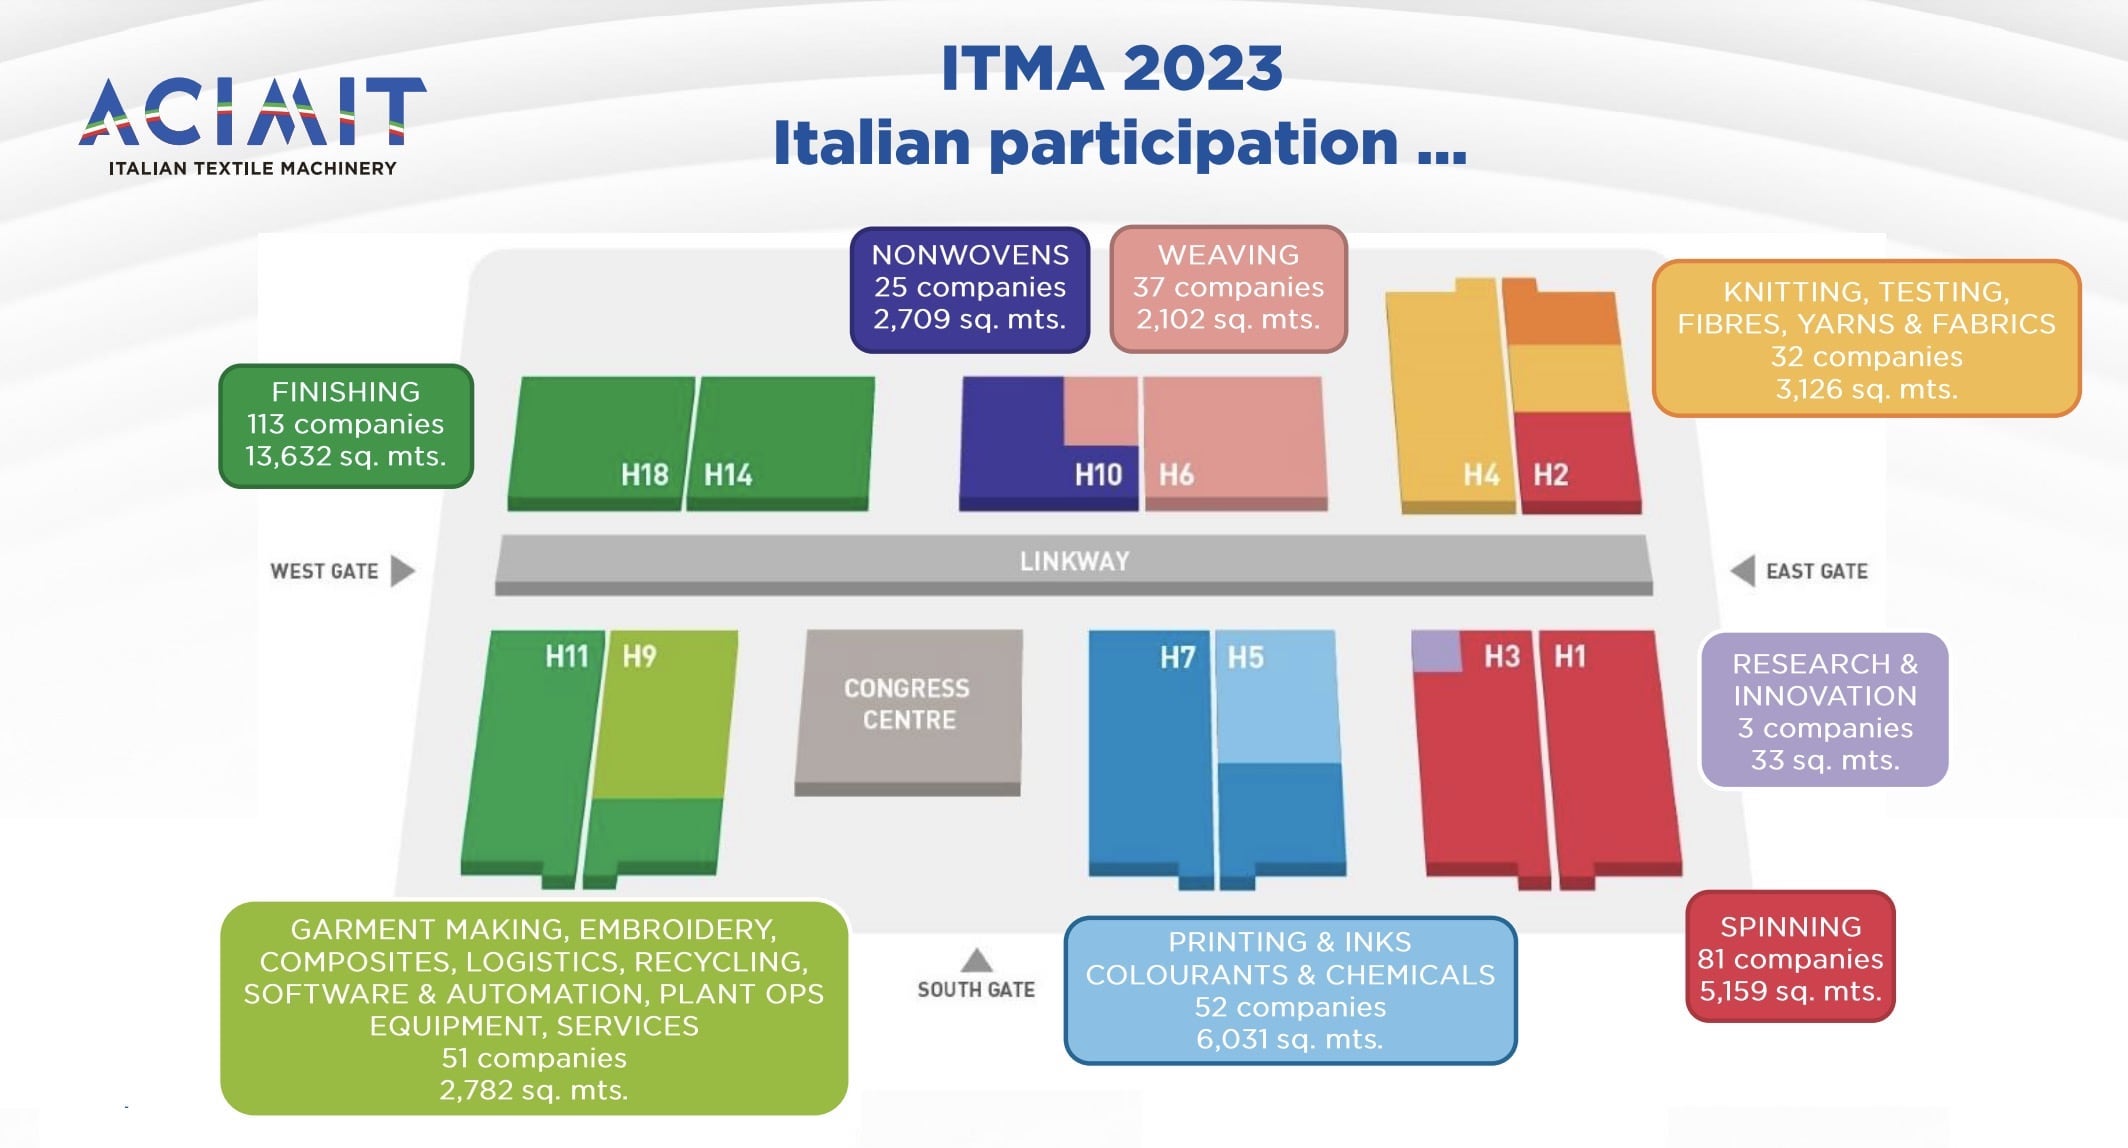 ITMA 2023 Hall Plan